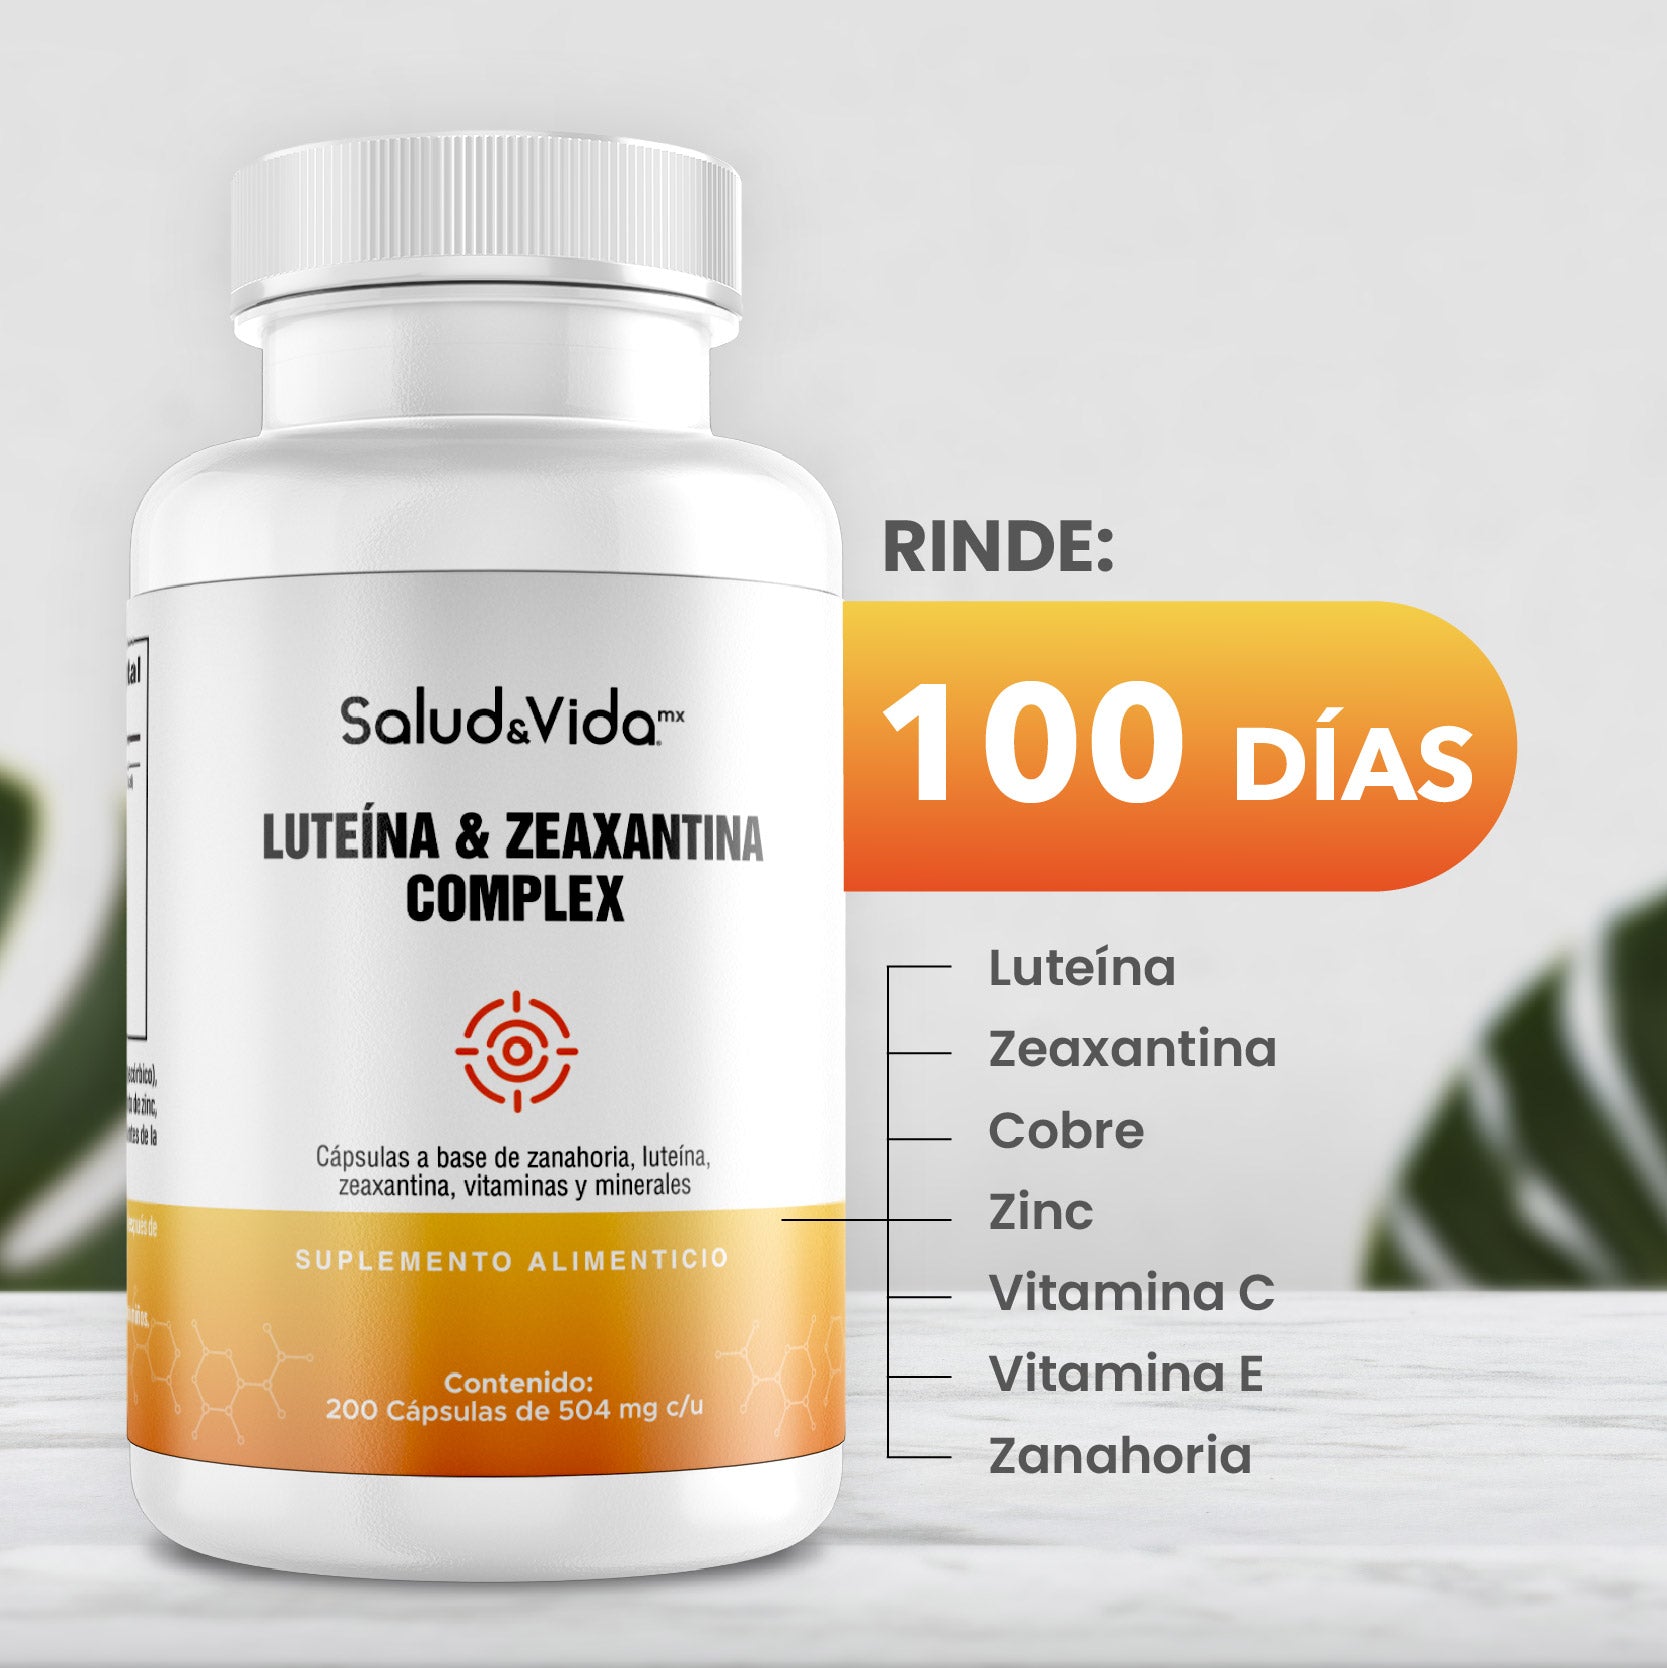 Complejo de Luteína y Zeaxantina con Vitaminas y minerales - Focus 504mg